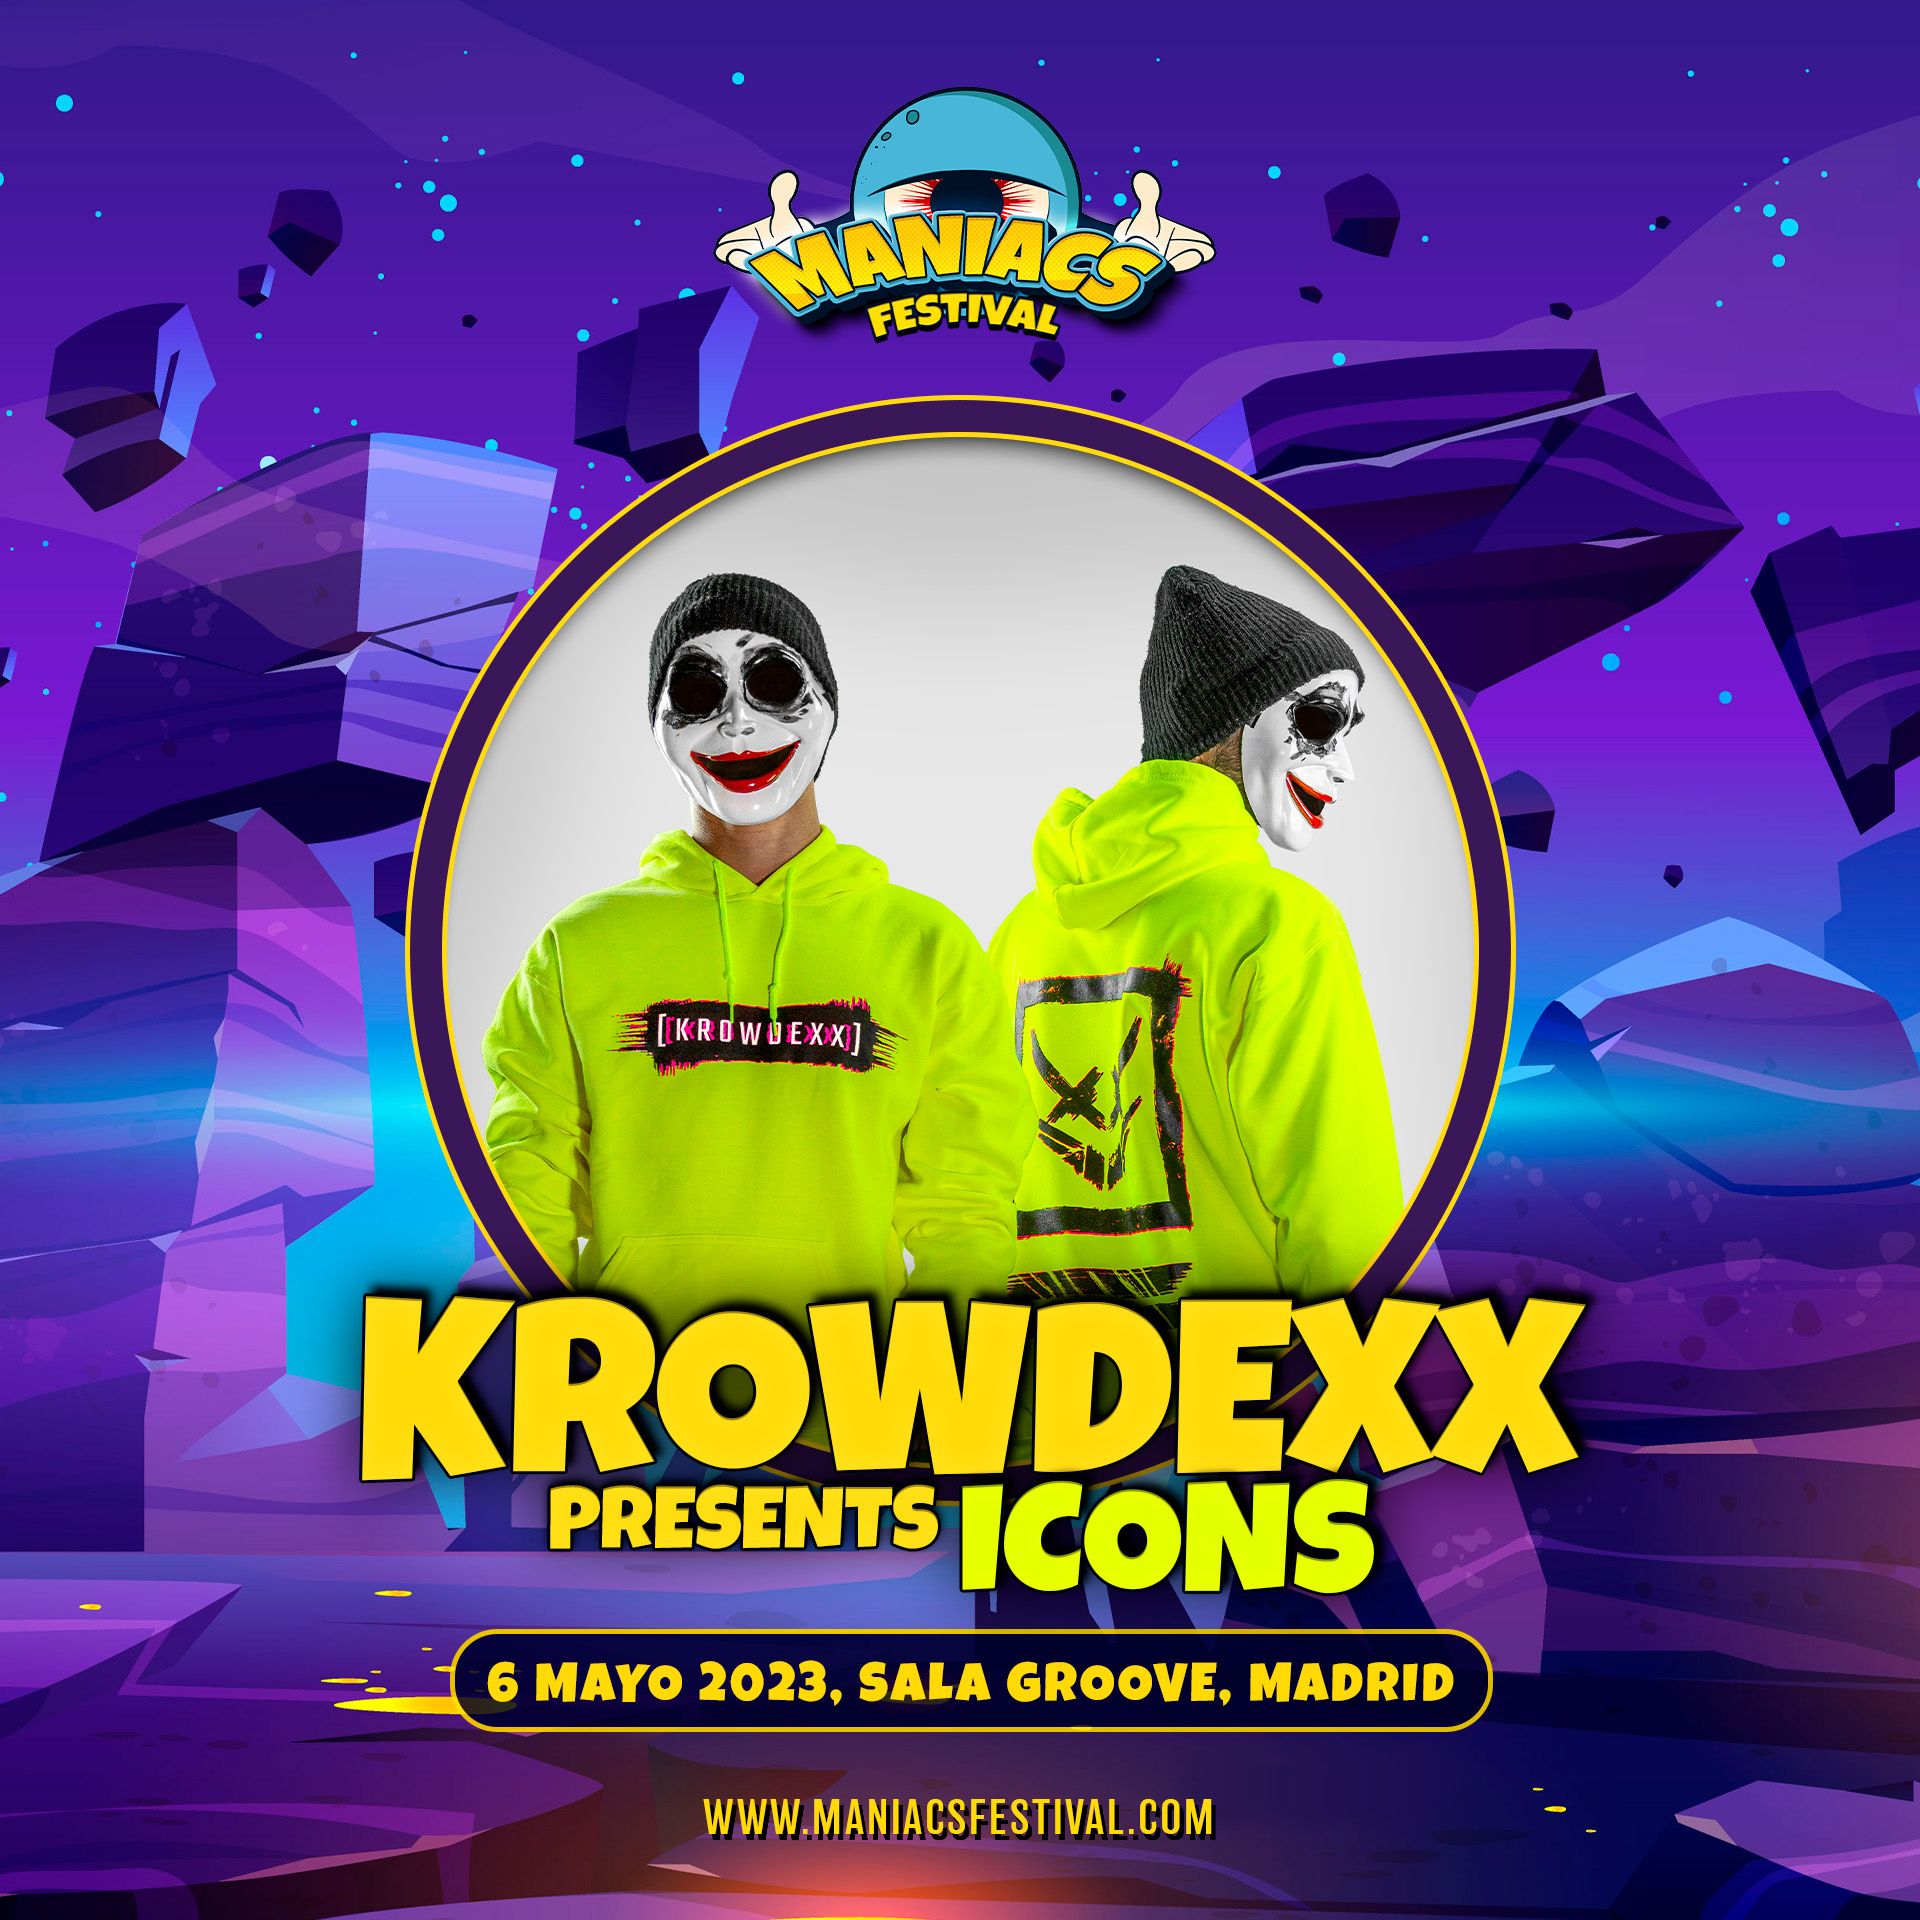 Krowdexx Maniacs Festival